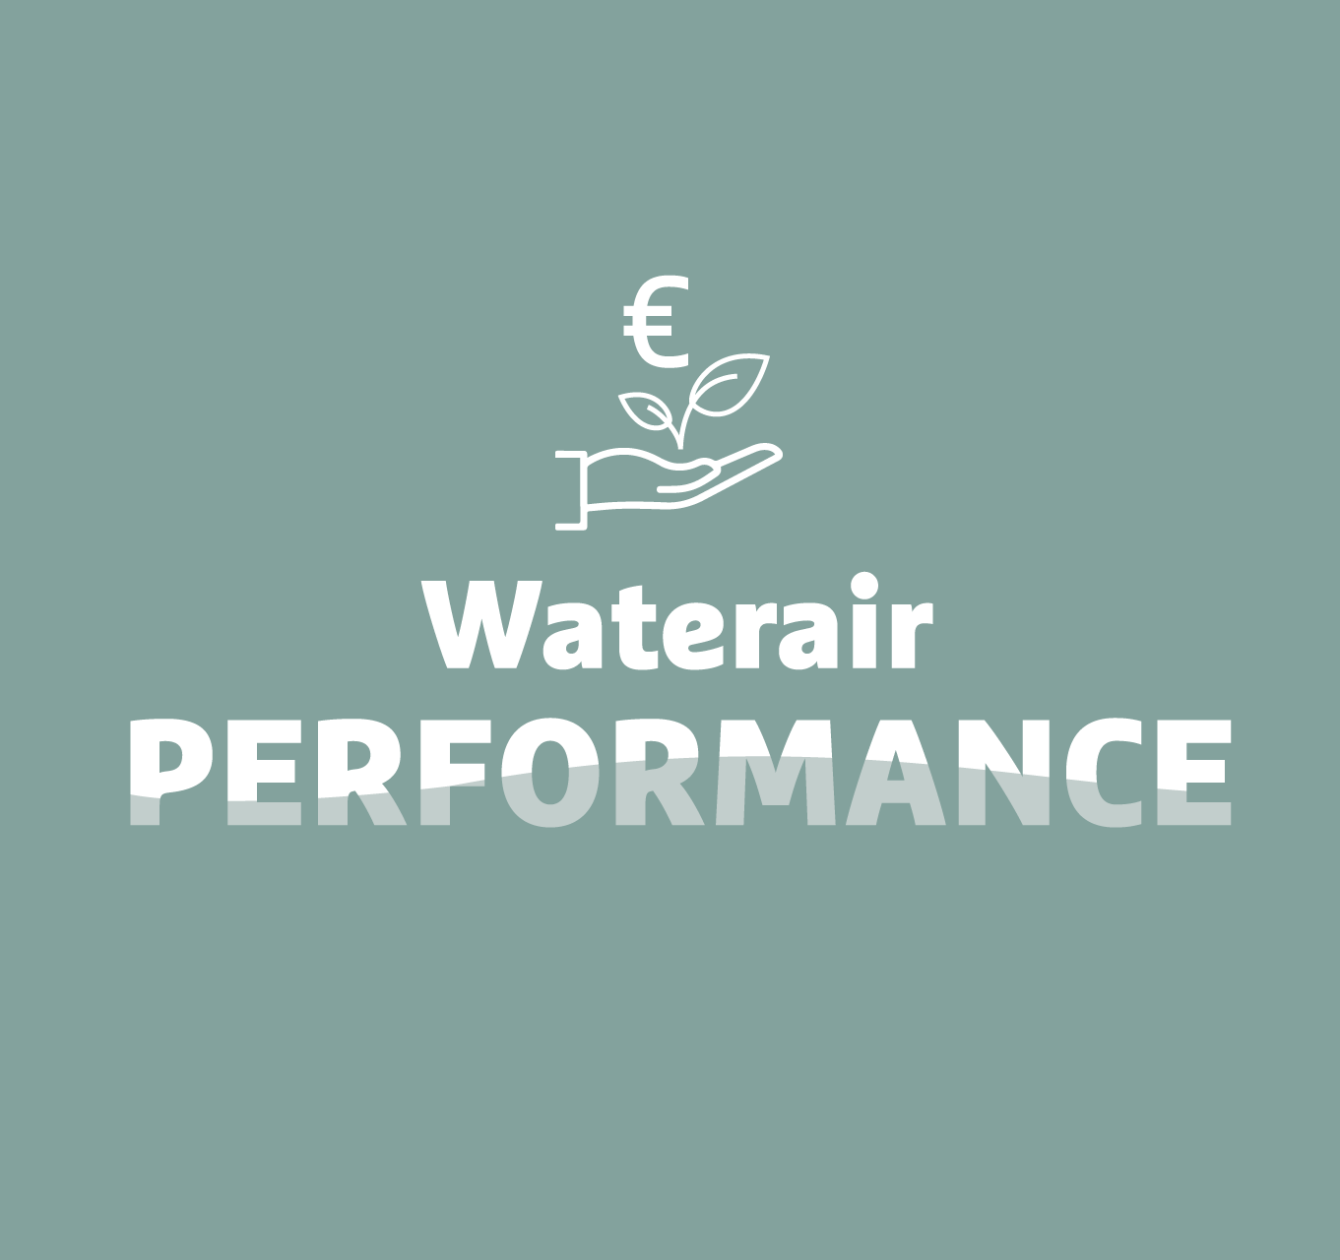 Waterair Performance: uw zuinige en milieuverantwoorde zwembad.